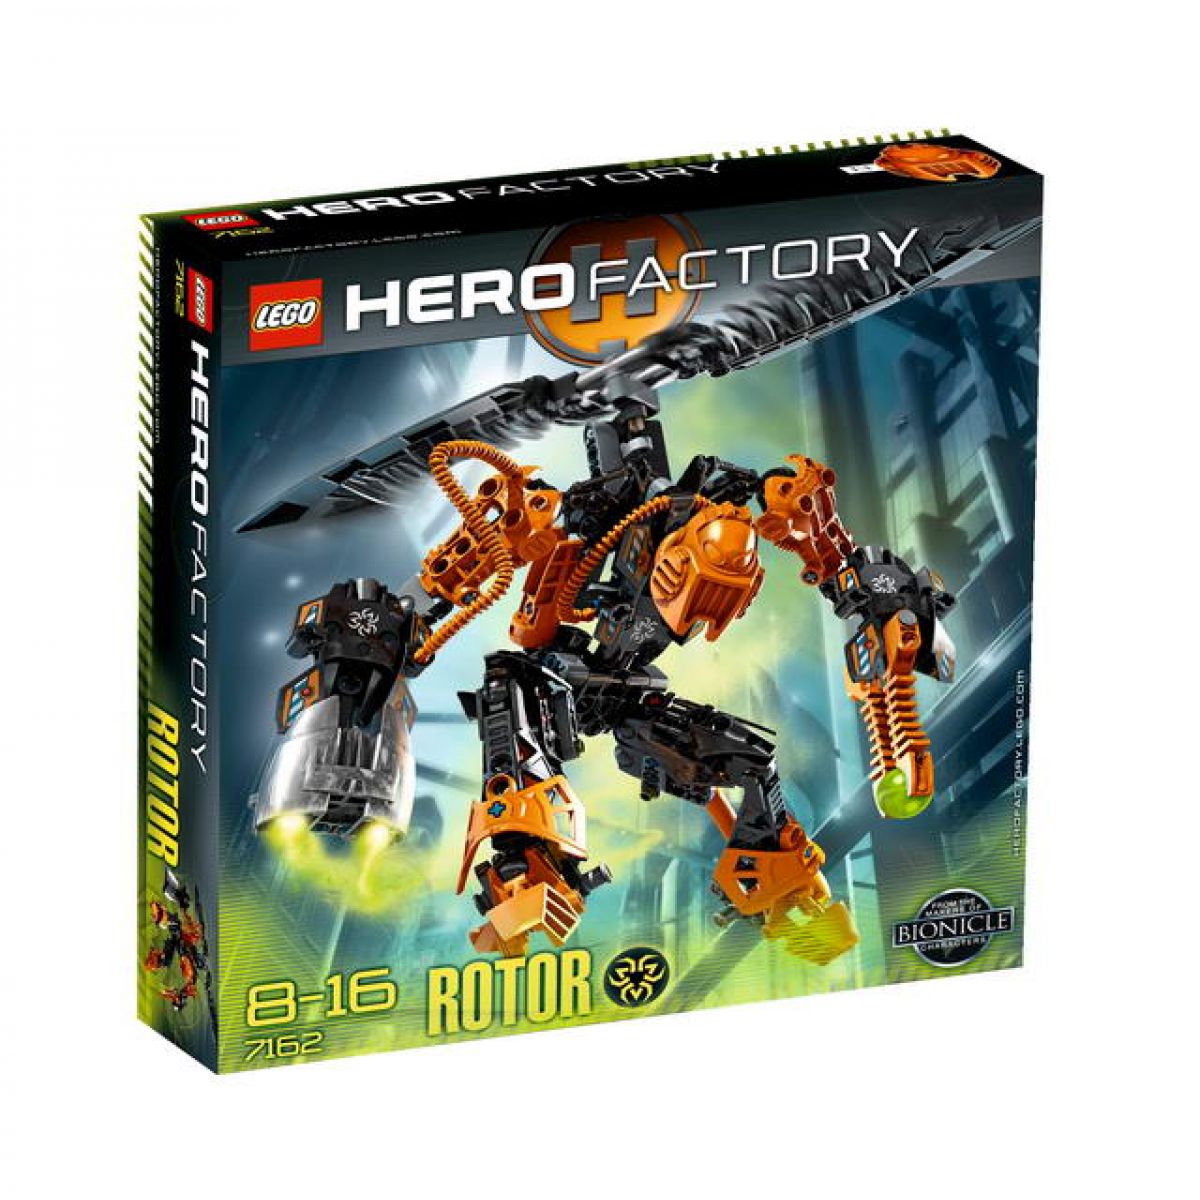 LEGO Hero Factory 7162 Rotor